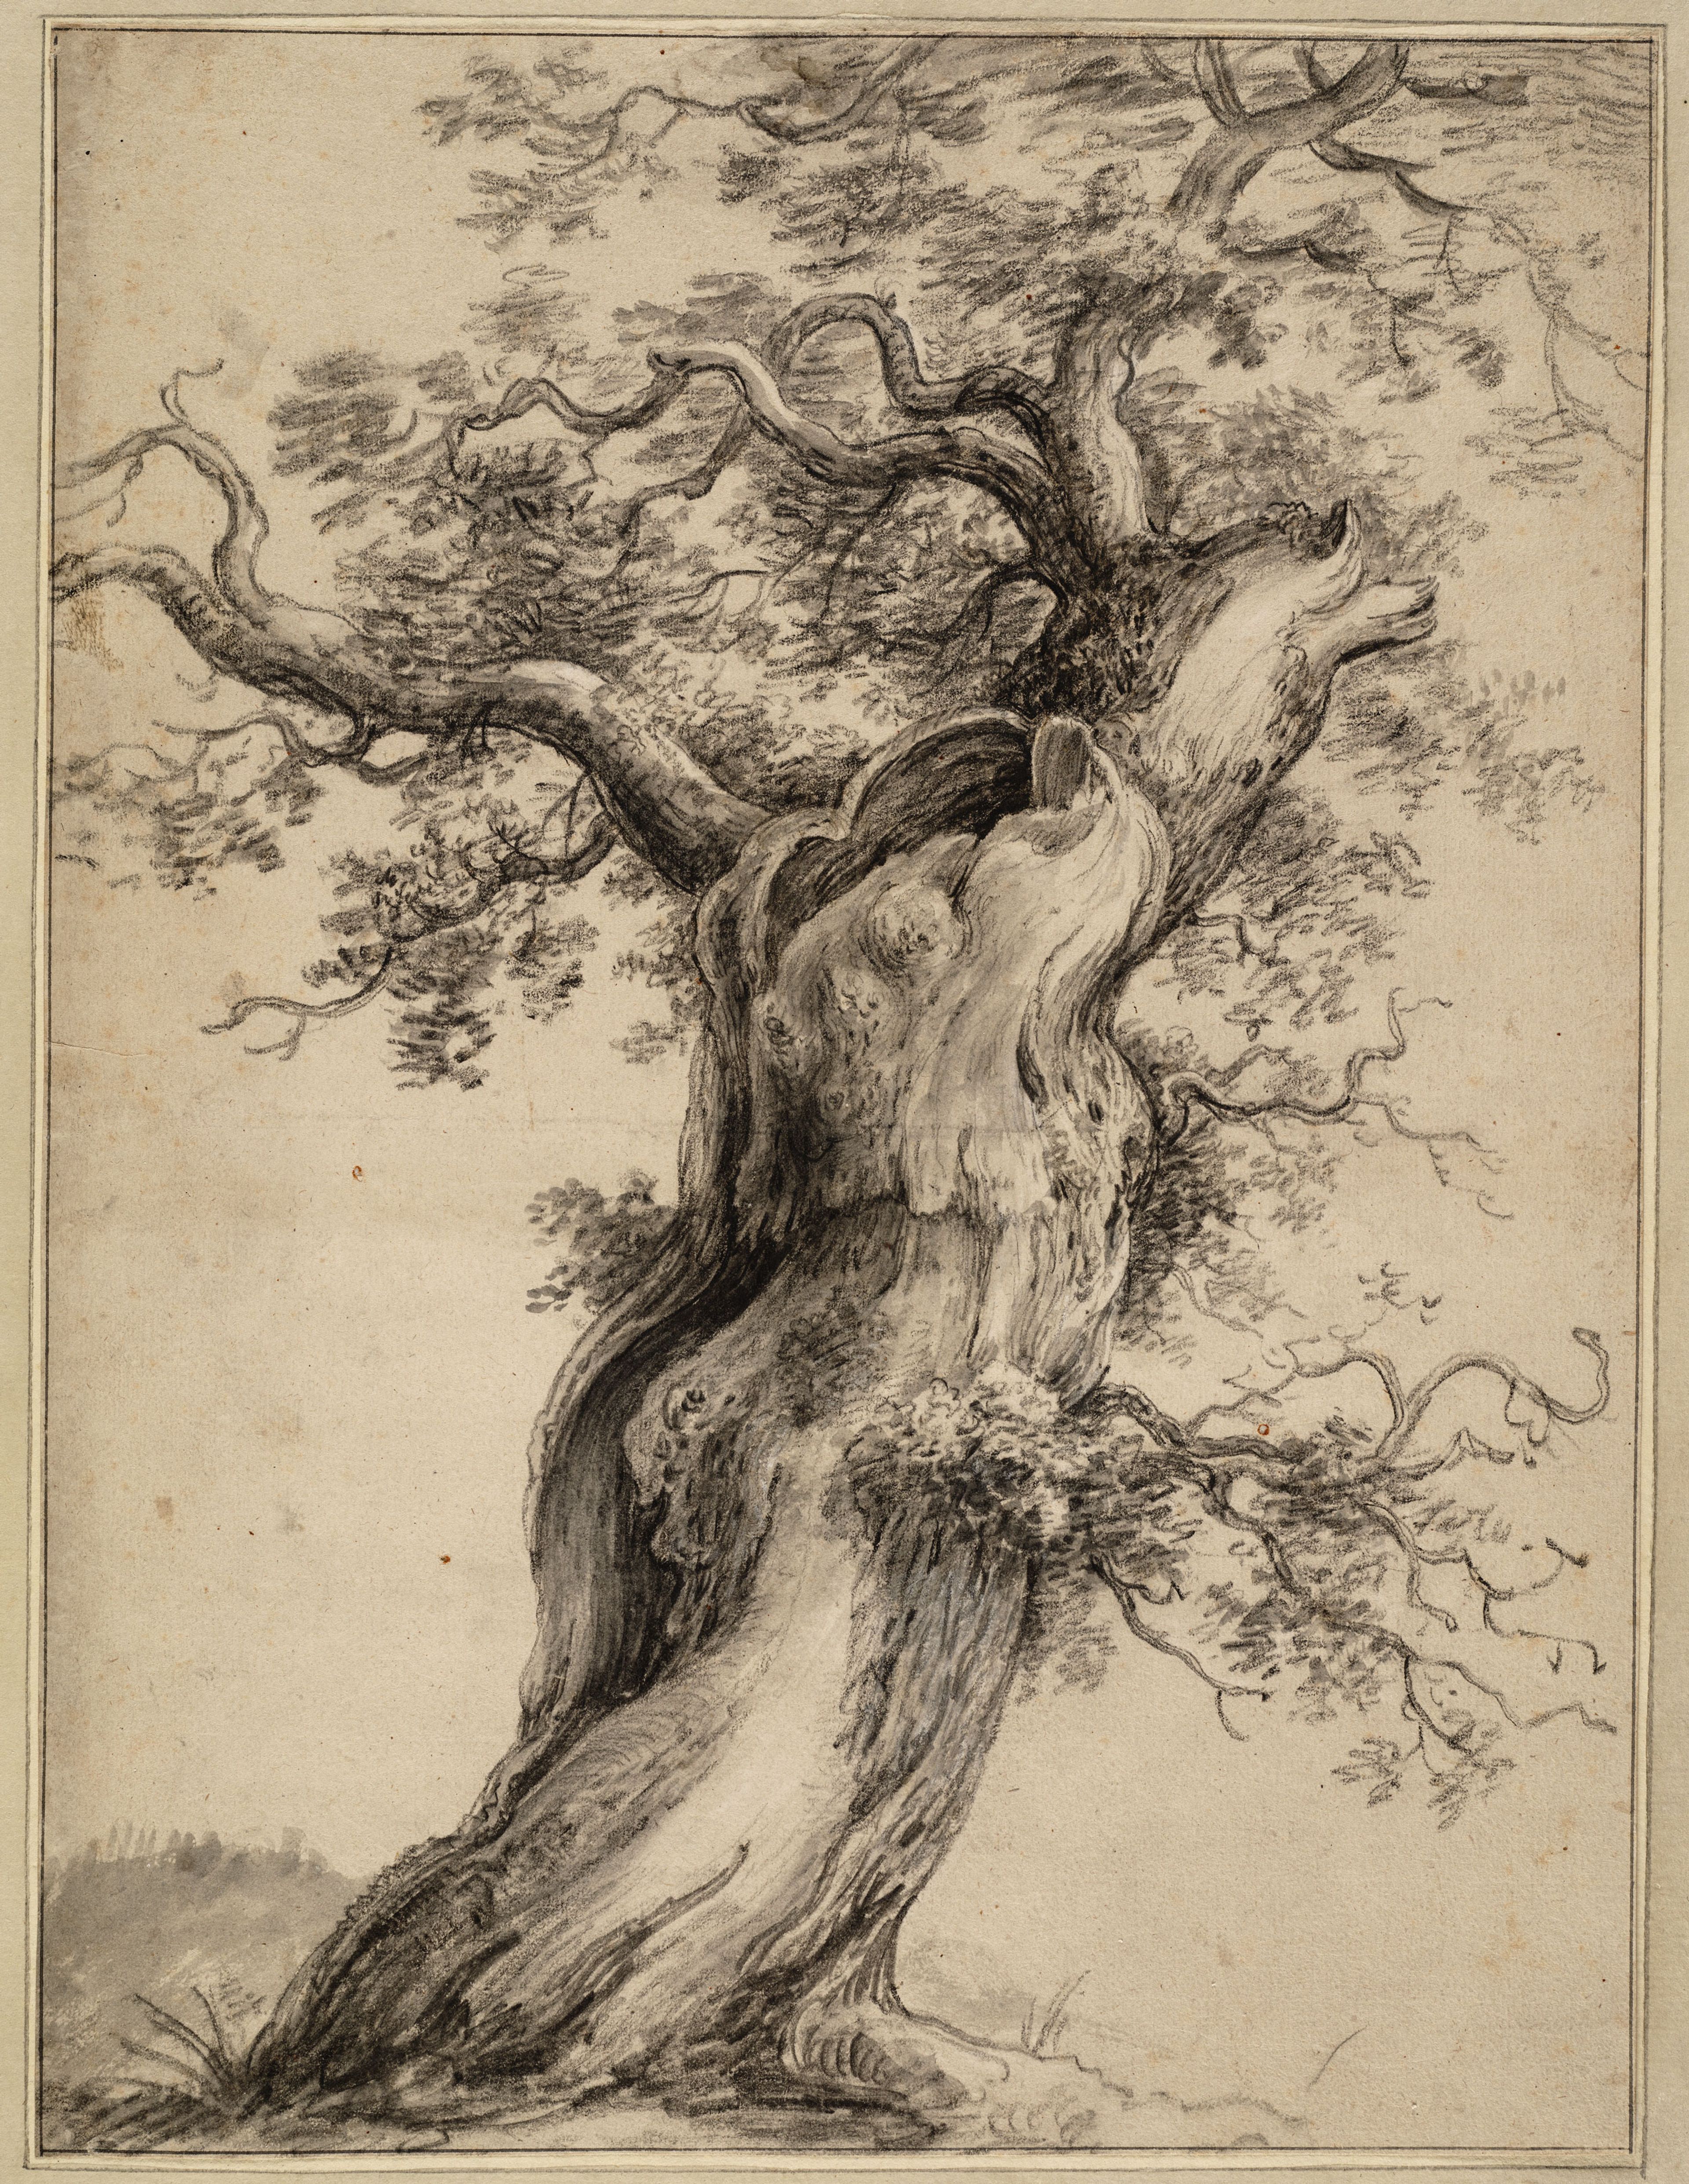 Knoestige oude boom Waterloo, Anthonie, (1609-1690) (tekenaar), na 1629 - voor 1690.